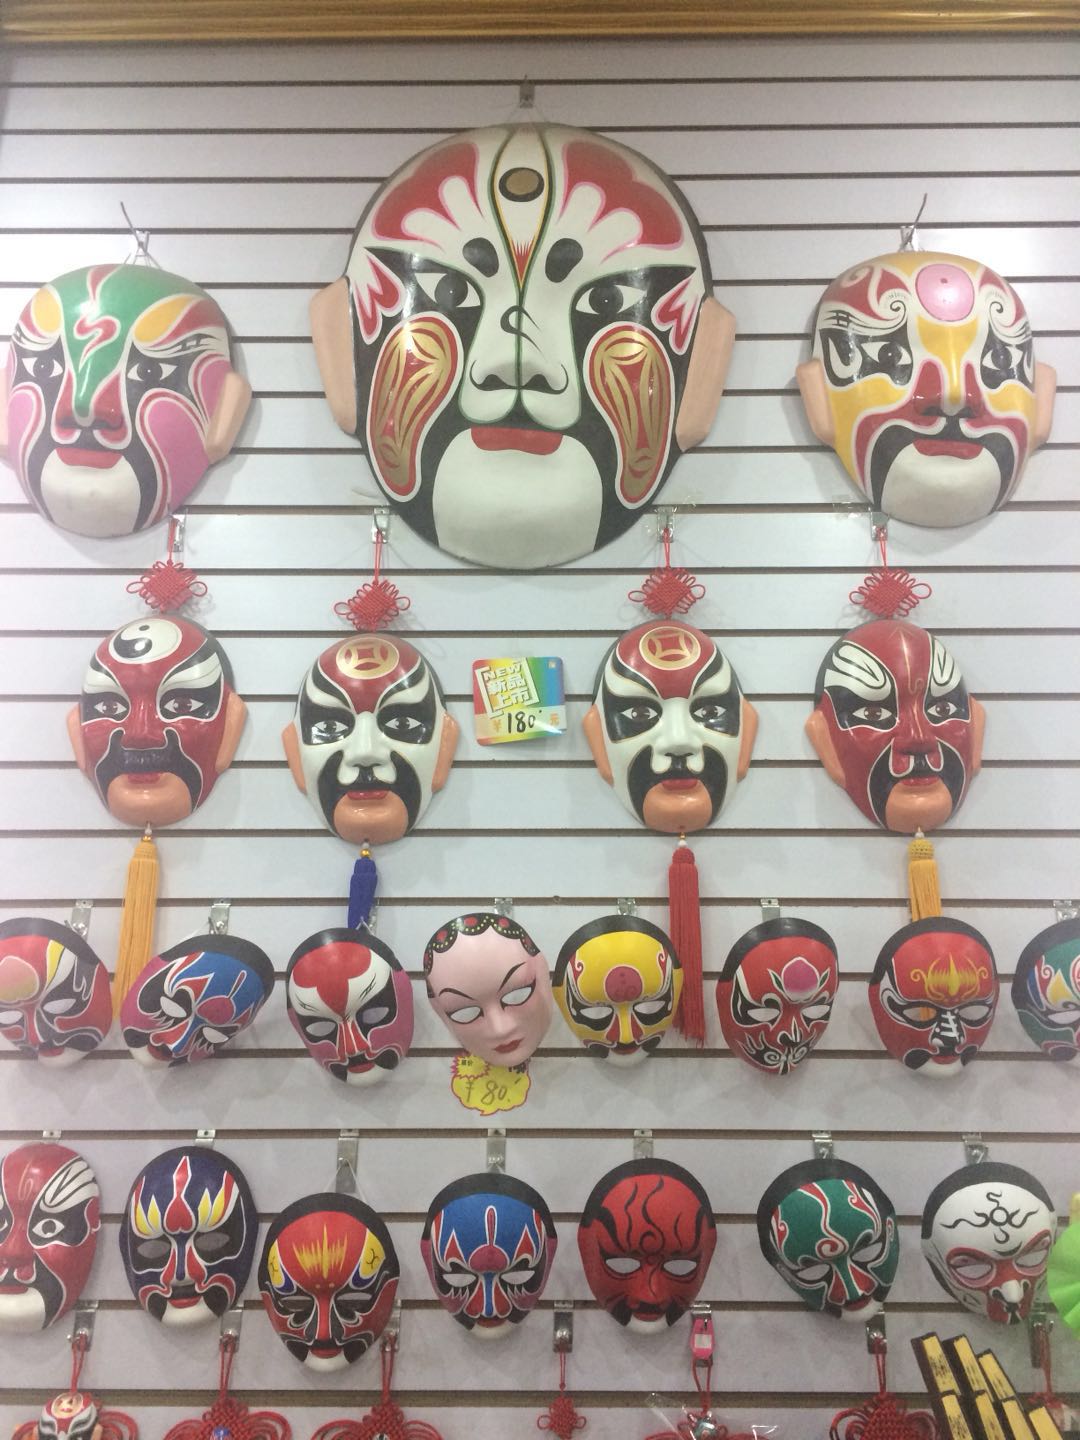 Wie auch in der "Sichuan Opera" werden gerne verrückte Masken getragen!